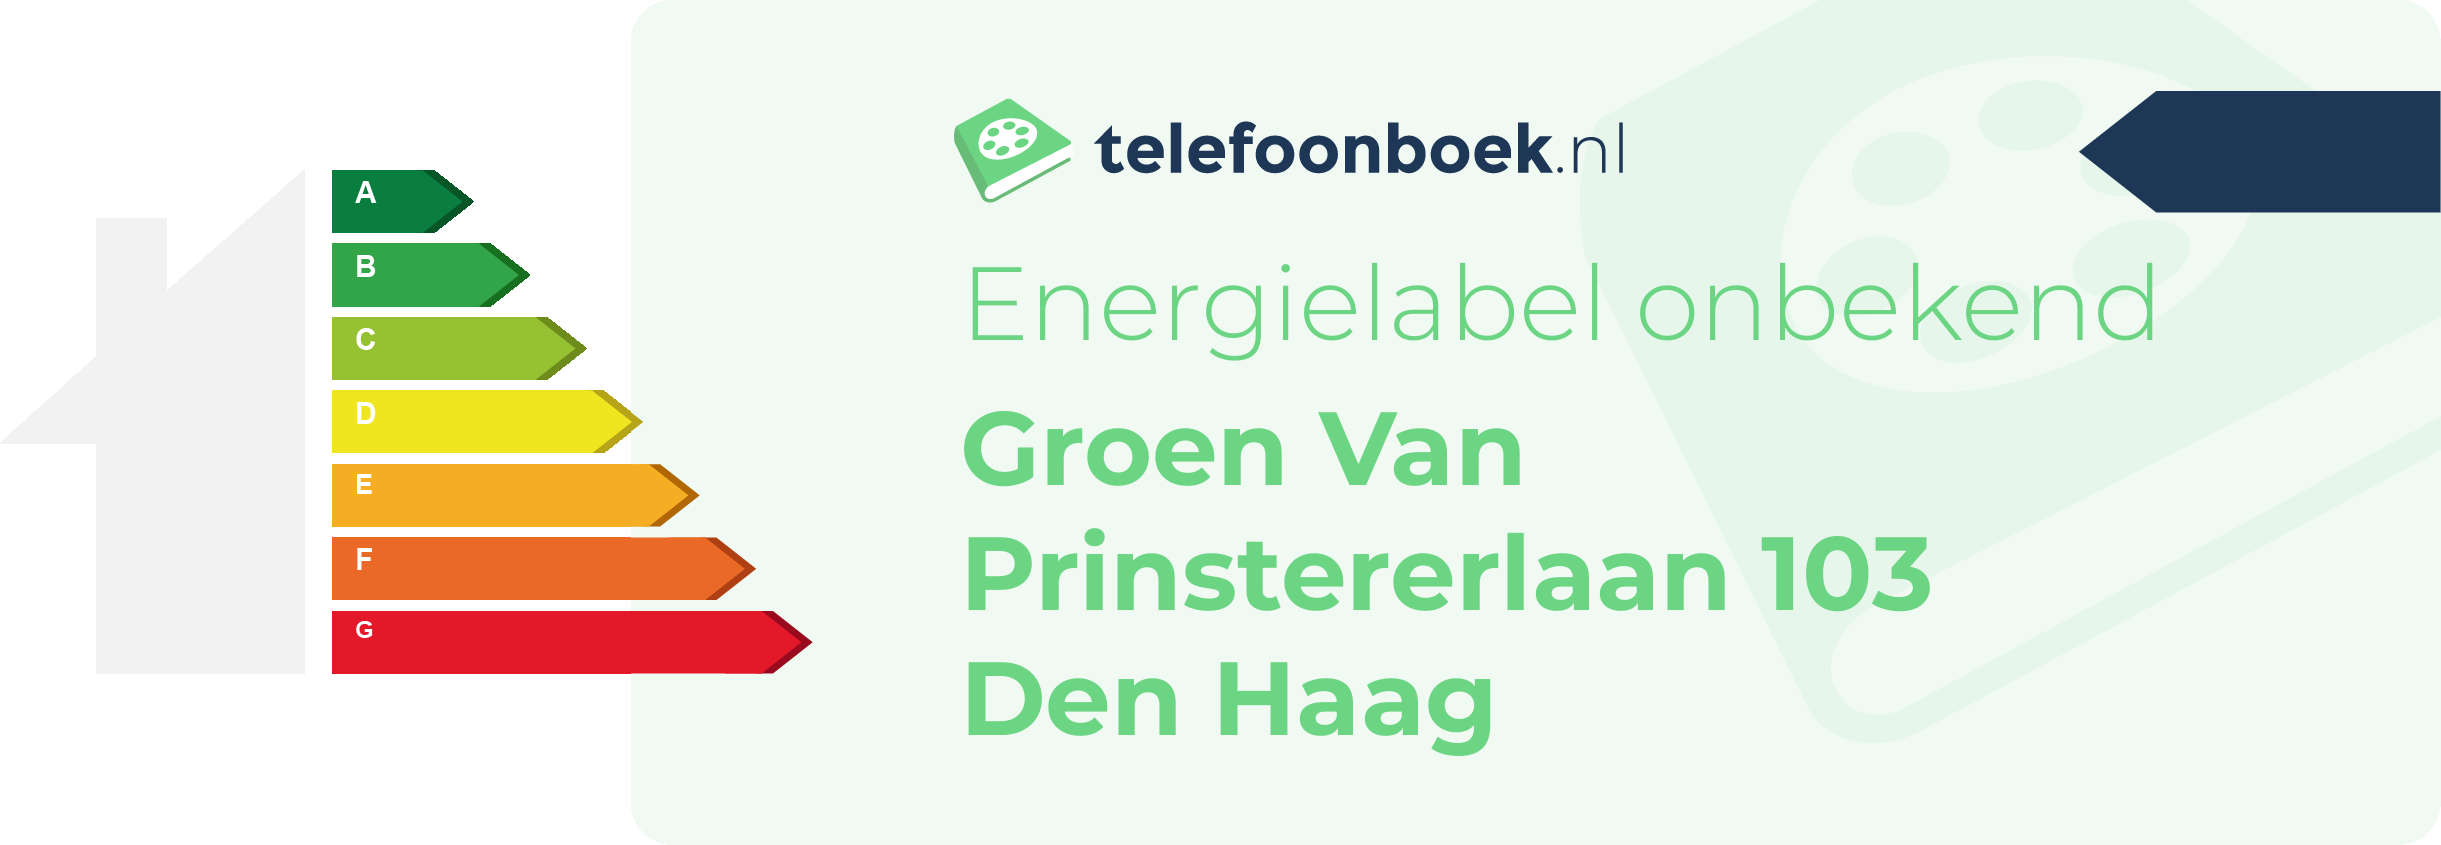 Energielabel Groen Van Prinstererlaan 103 Den Haag